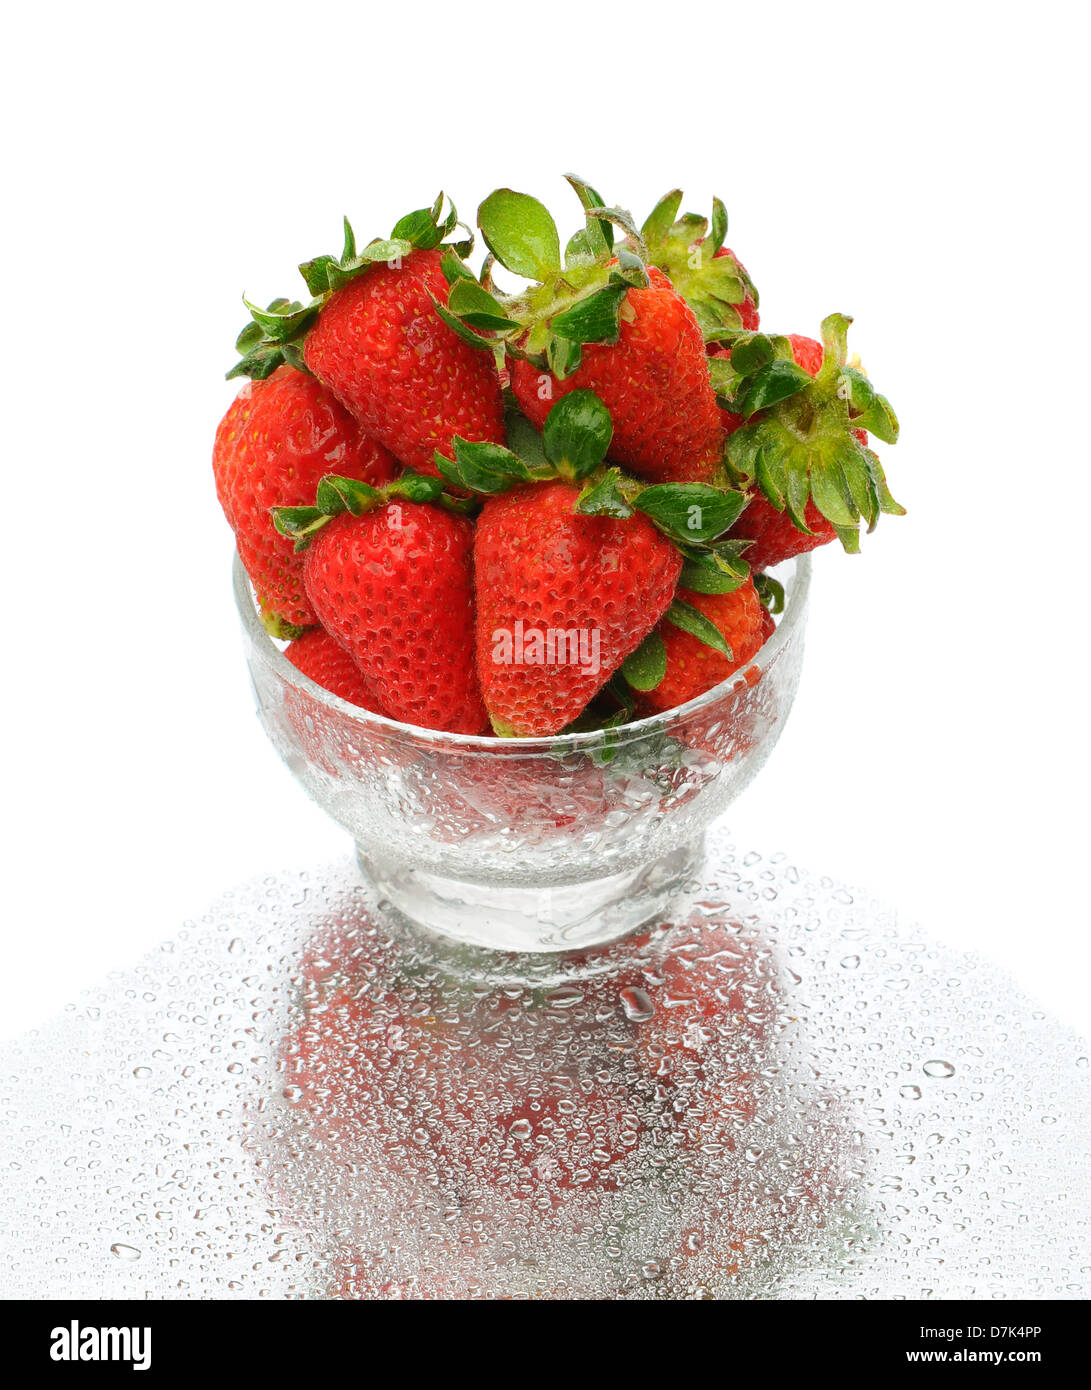 Nahaufnahme von frisch gepflückten Erdbeeren in eine Glasschüssel mit Reflektion auf nassem Untergrund vor einem weißen Hintergrund. Stockfoto